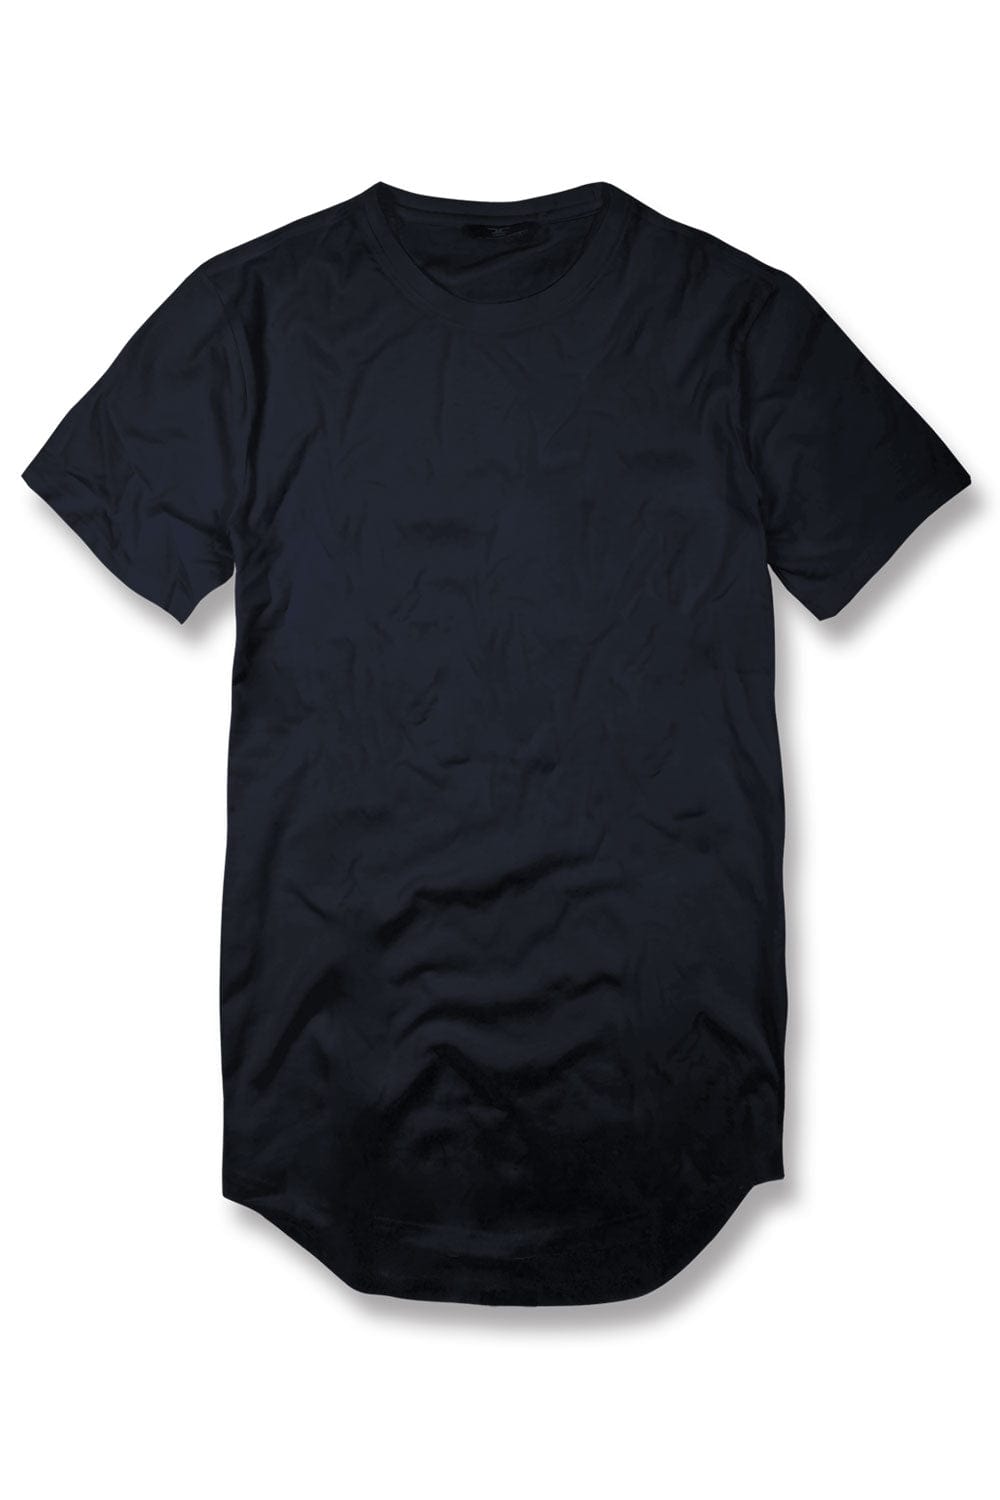 JC Big Men Big Men's Scallop T-Shirt Navy / 4XL